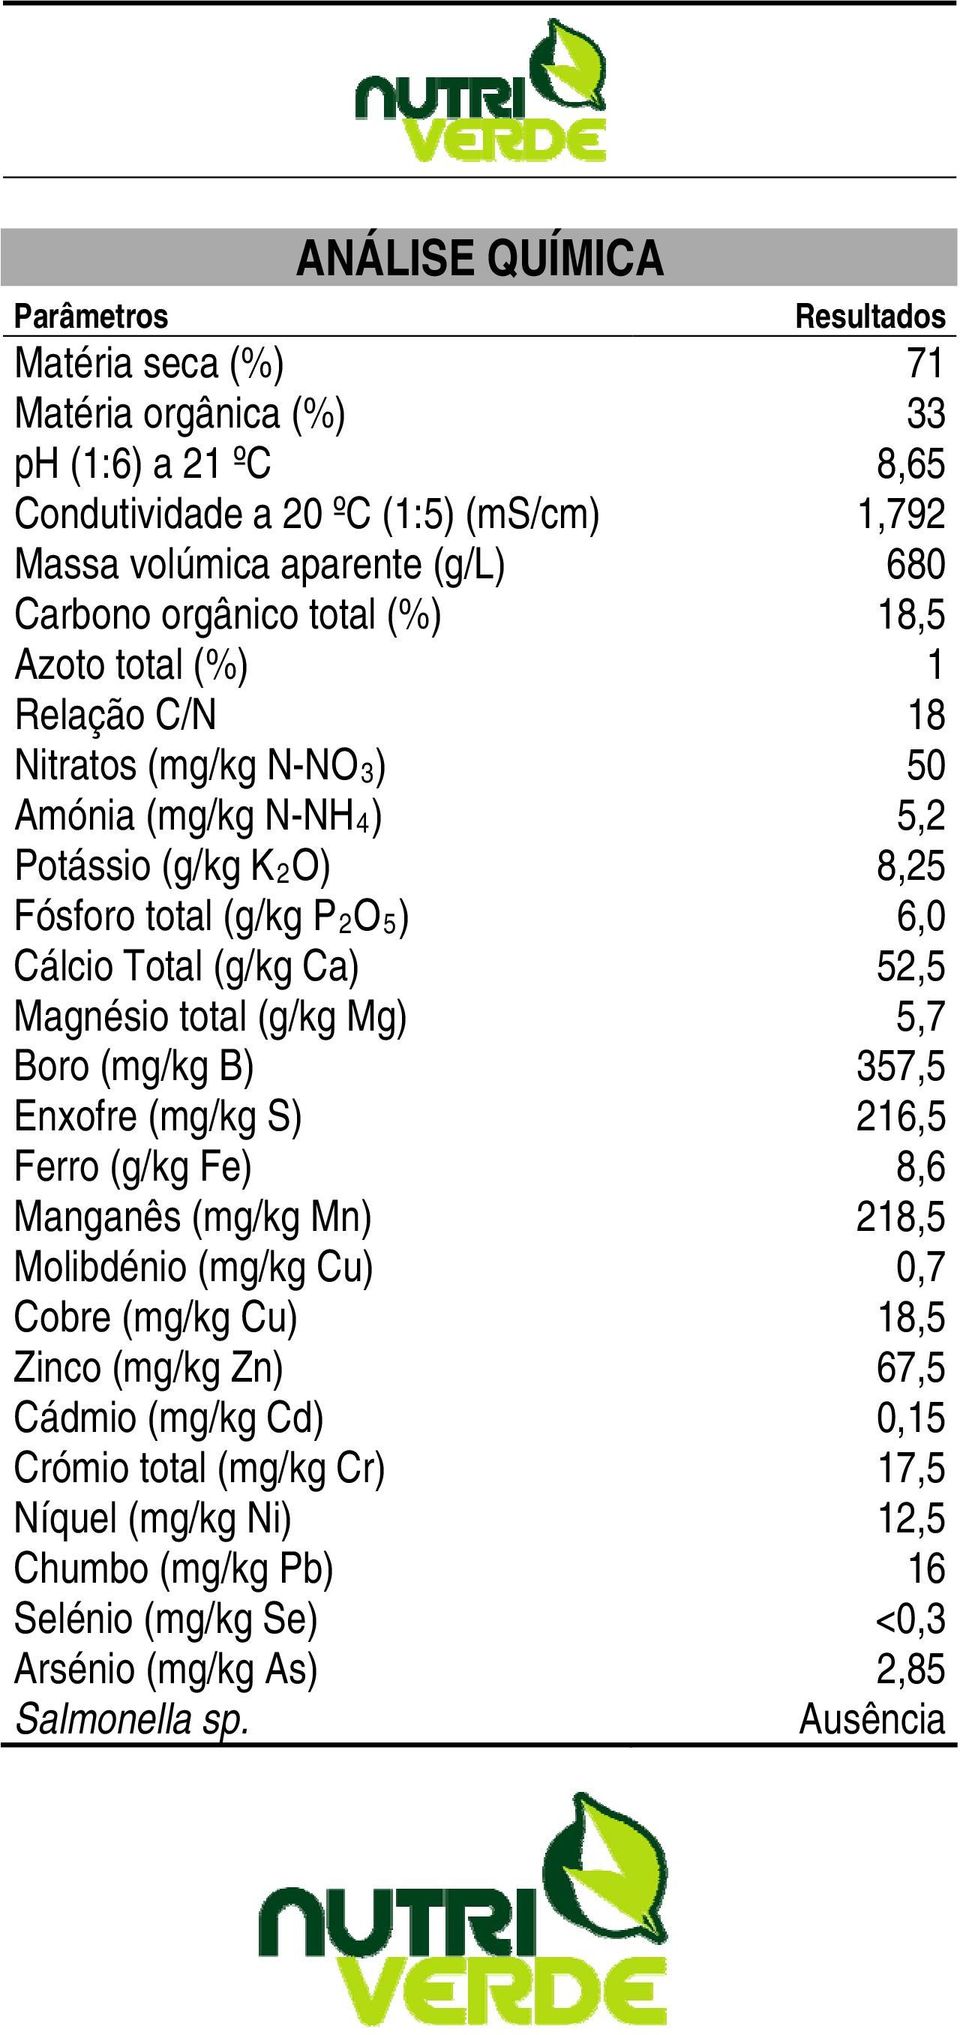 (g/kg Ca) 52,5 Magnésio total (g/kg Mg) 5,7 Boro (mg/kg B) 357,5 Enxofre (mg/kg S) 216,5 Ferro (g/kg Fe) 8,6 Manganês (mg/kg Mn) 218,5 Molibdénio (mg/kg Cu) 0,7 Cobre (mg/kg Cu) 18,5